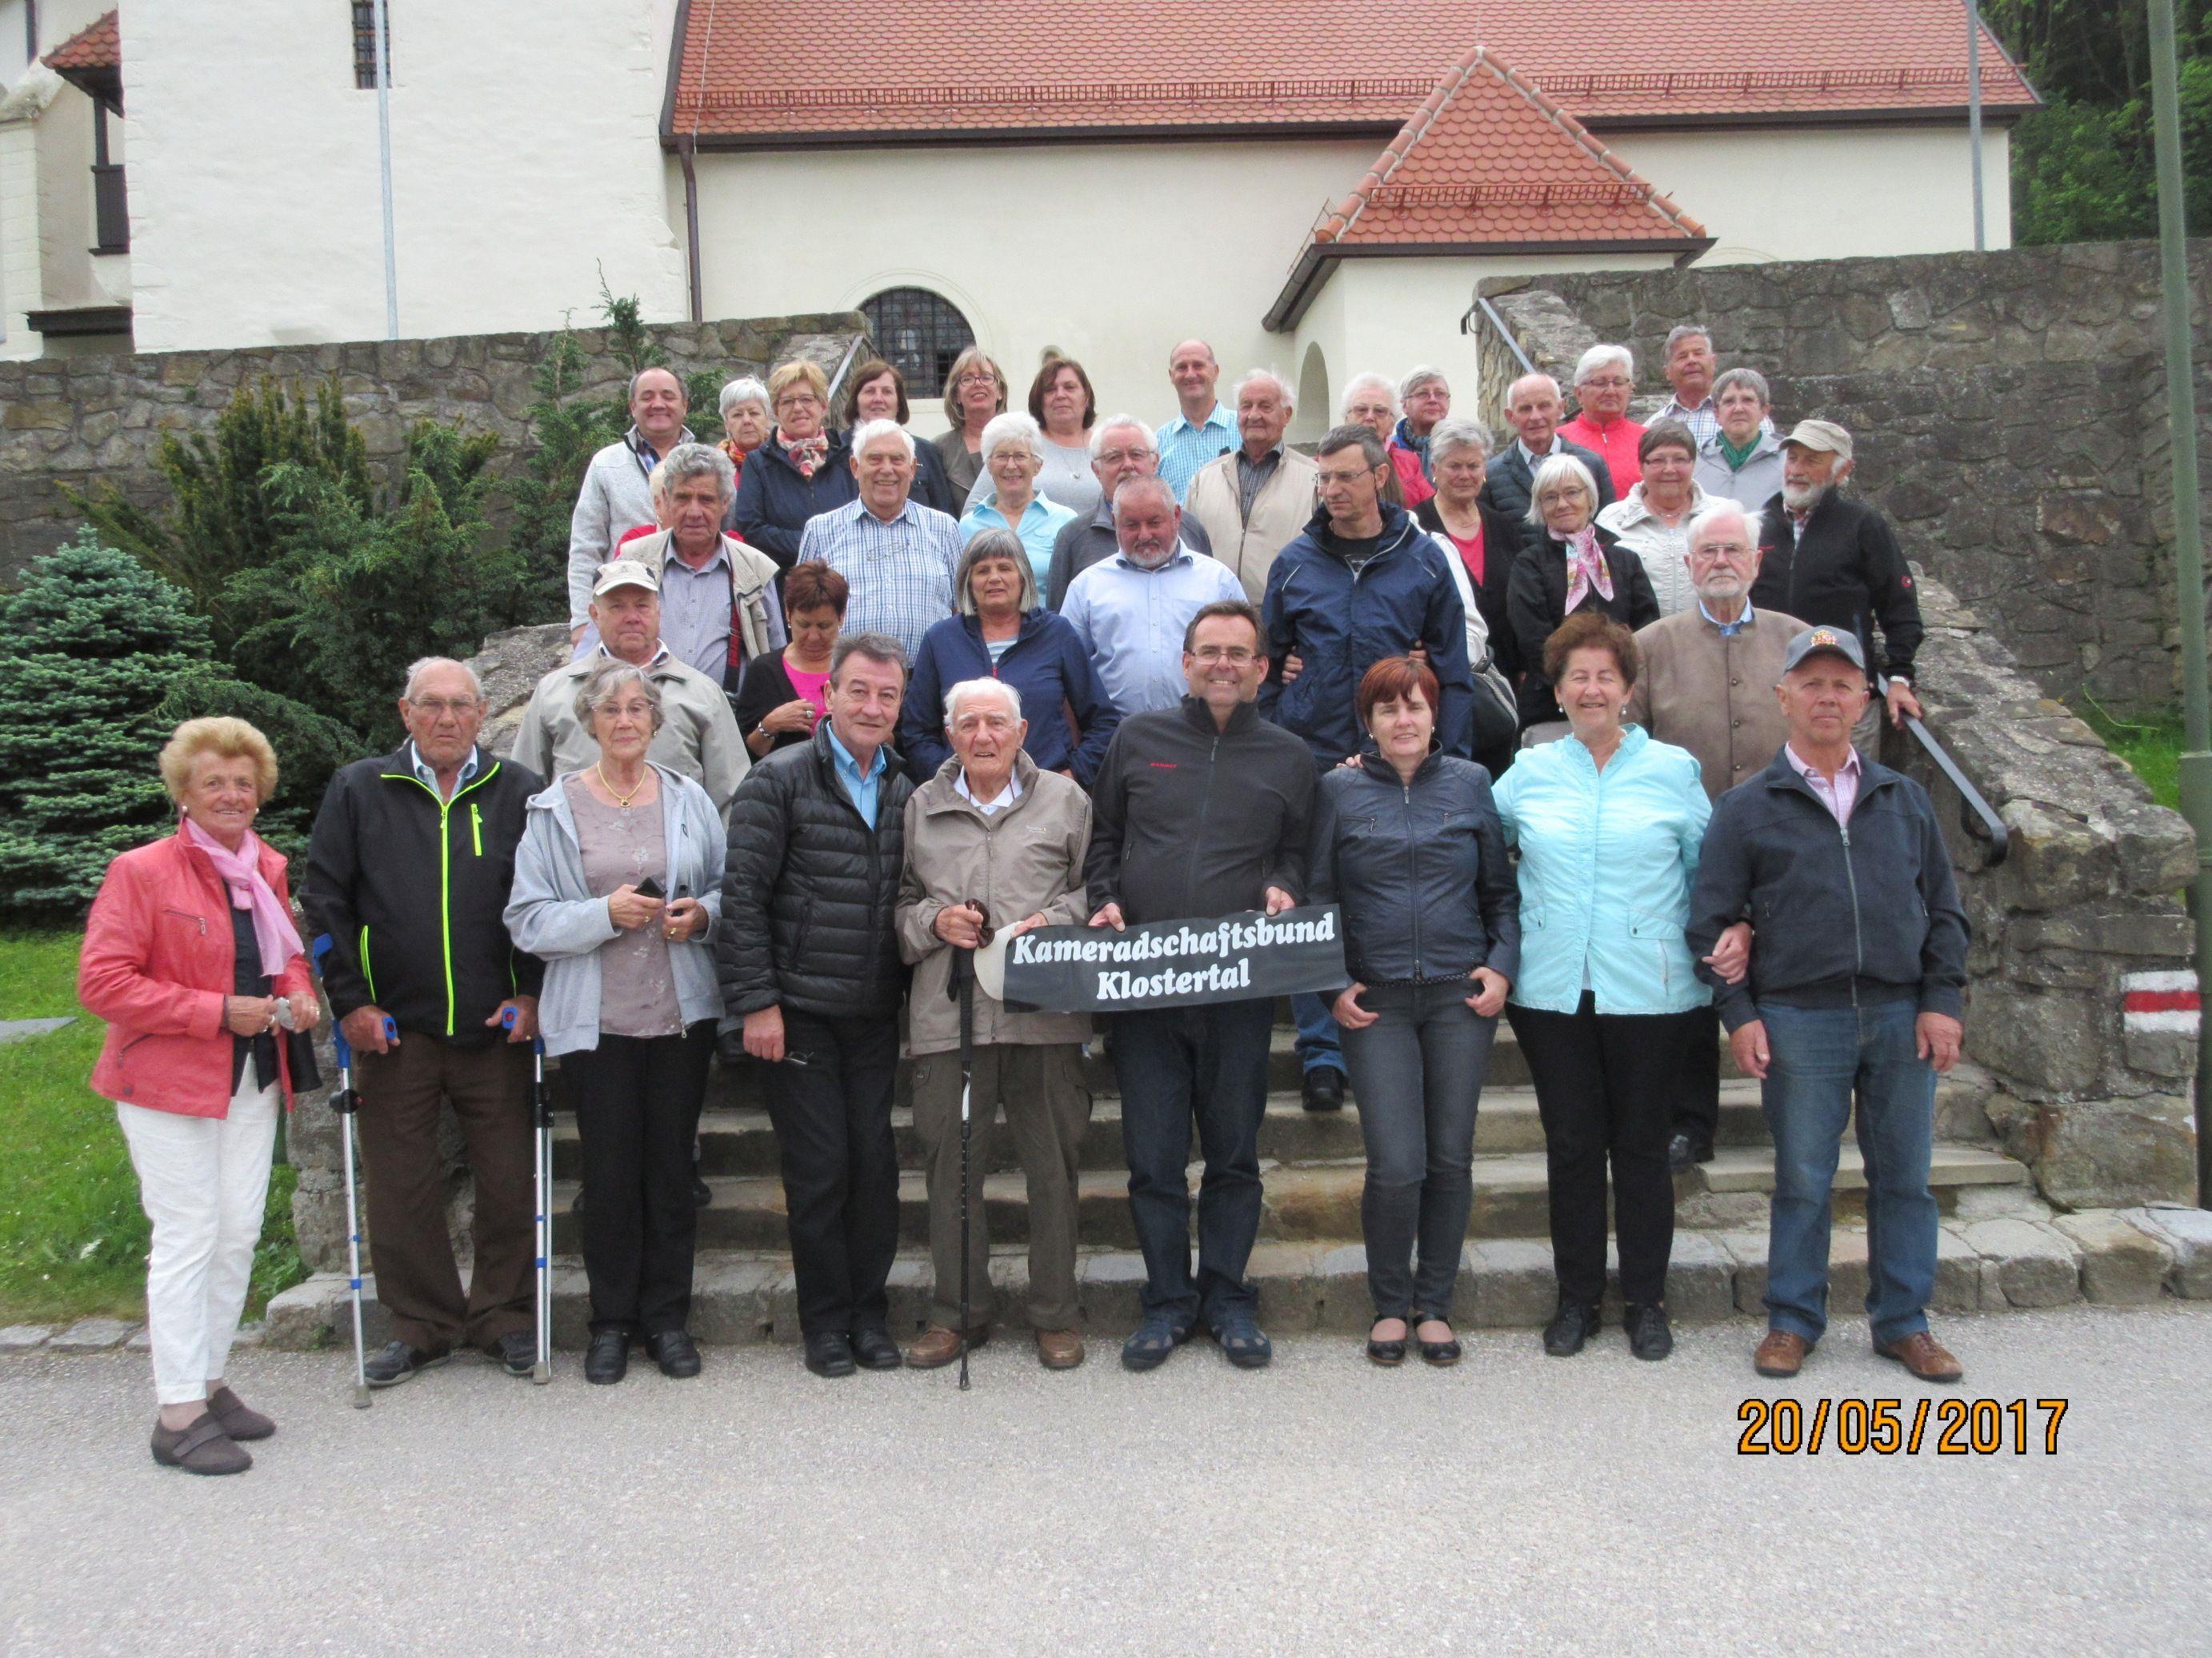 Der Kameradschaftsbund Klostertal erkundete vier Tage lang Niederösterreich